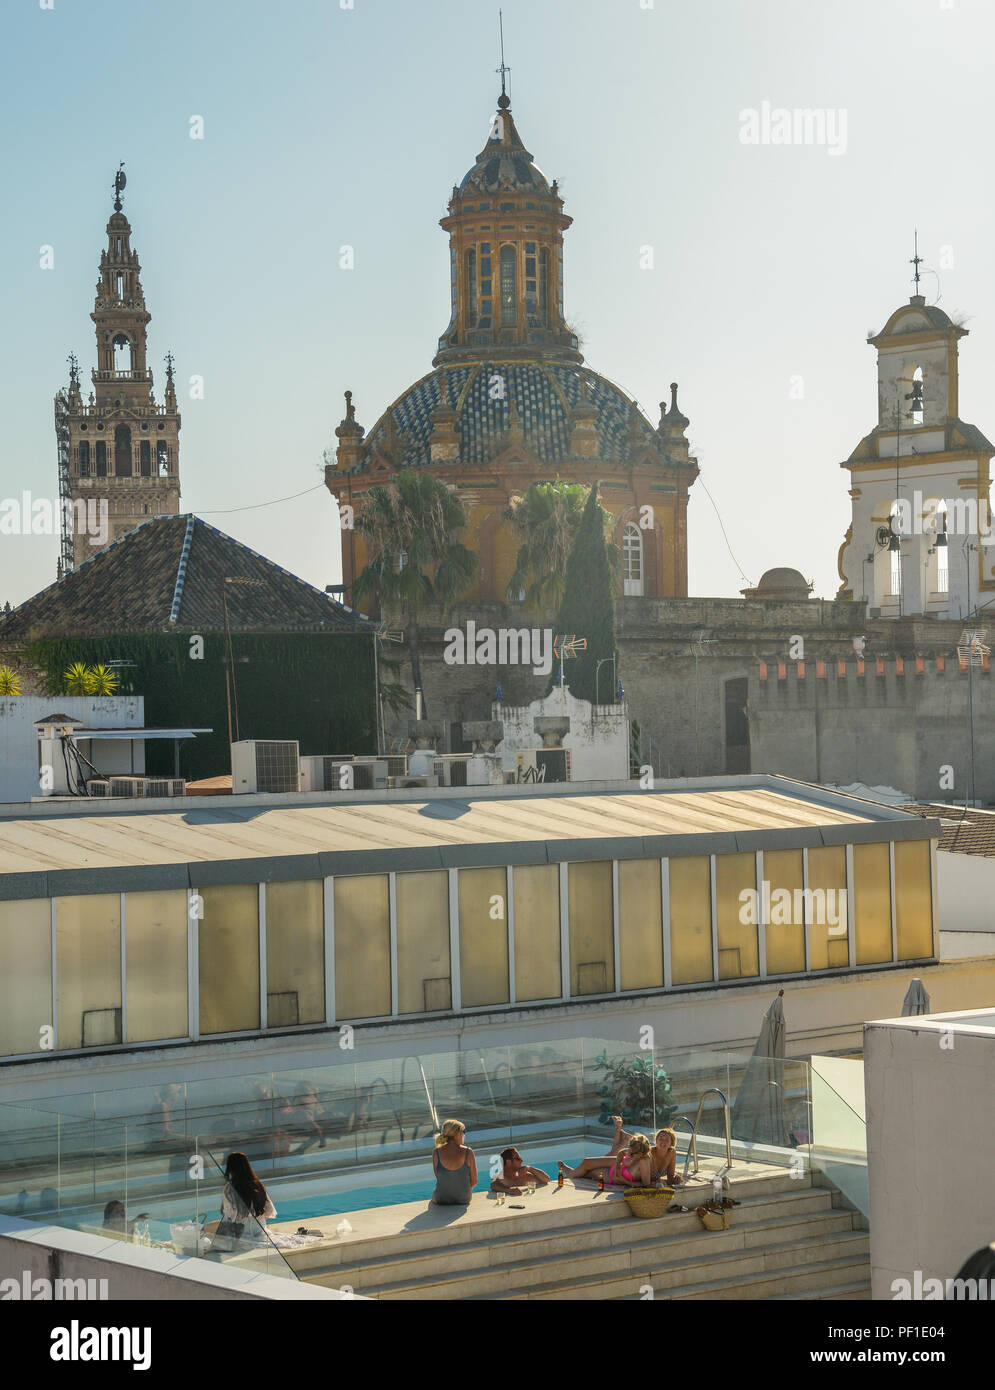 Sevilla, Spanien - 15. Juli 2018: Ein glücklicher Mensch und fünf Frauen ein erfrischendes Bad im Pool auf der Dachterrasse genießen Sie mit einige alkoholische Getränke mit Blick auf die Skyline von Sevil Stockfoto